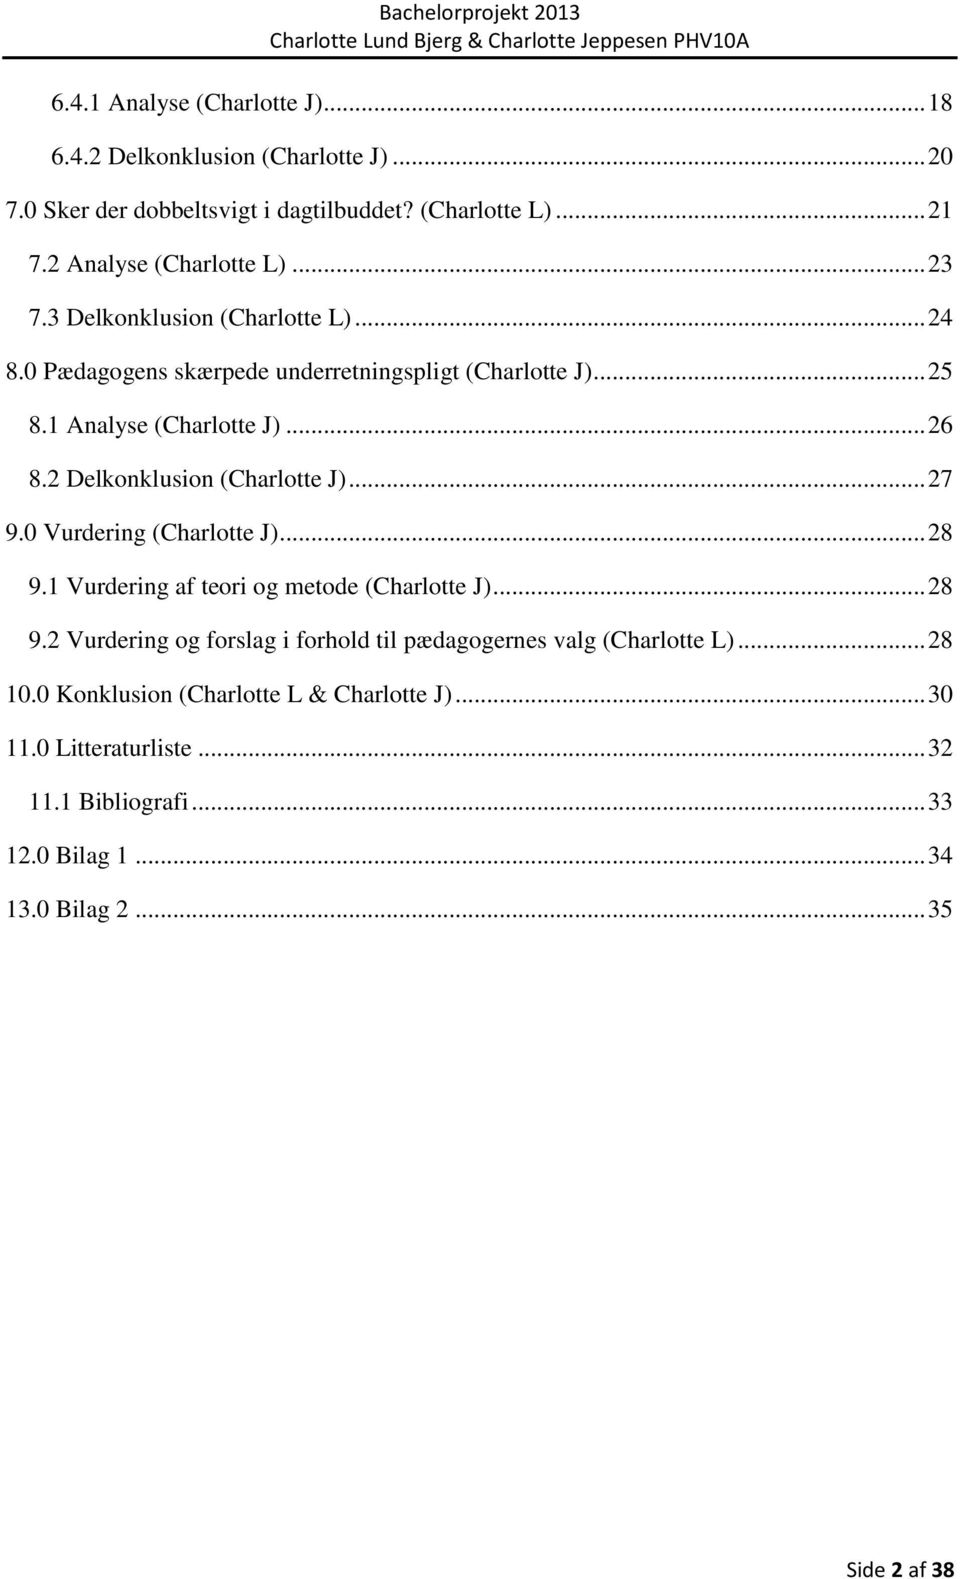 2 Delkonklusion (Charlotte J)... 27 9.0 Vurdering (Charlotte J)... 28 9.1 Vurdering af teori og metode (Charlotte J)... 28 9.2 Vurdering og forslag i forhold til pædagogernes valg (Charlotte L).